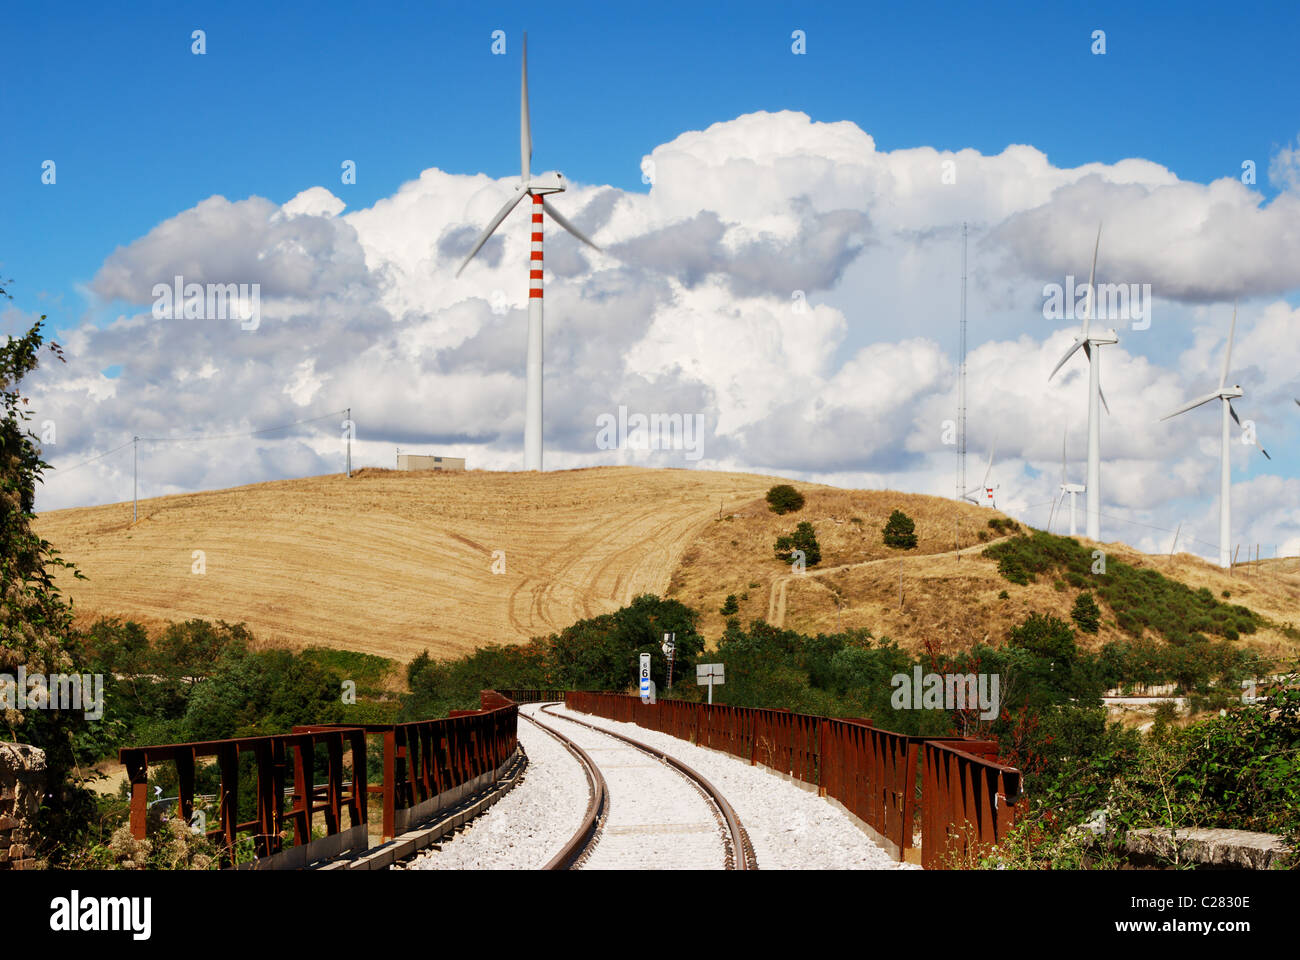 Molise ländlichen Landschaft mit Eisenbahn, Windkraftanlagen und stimmungsvoller Himmel Stockfoto